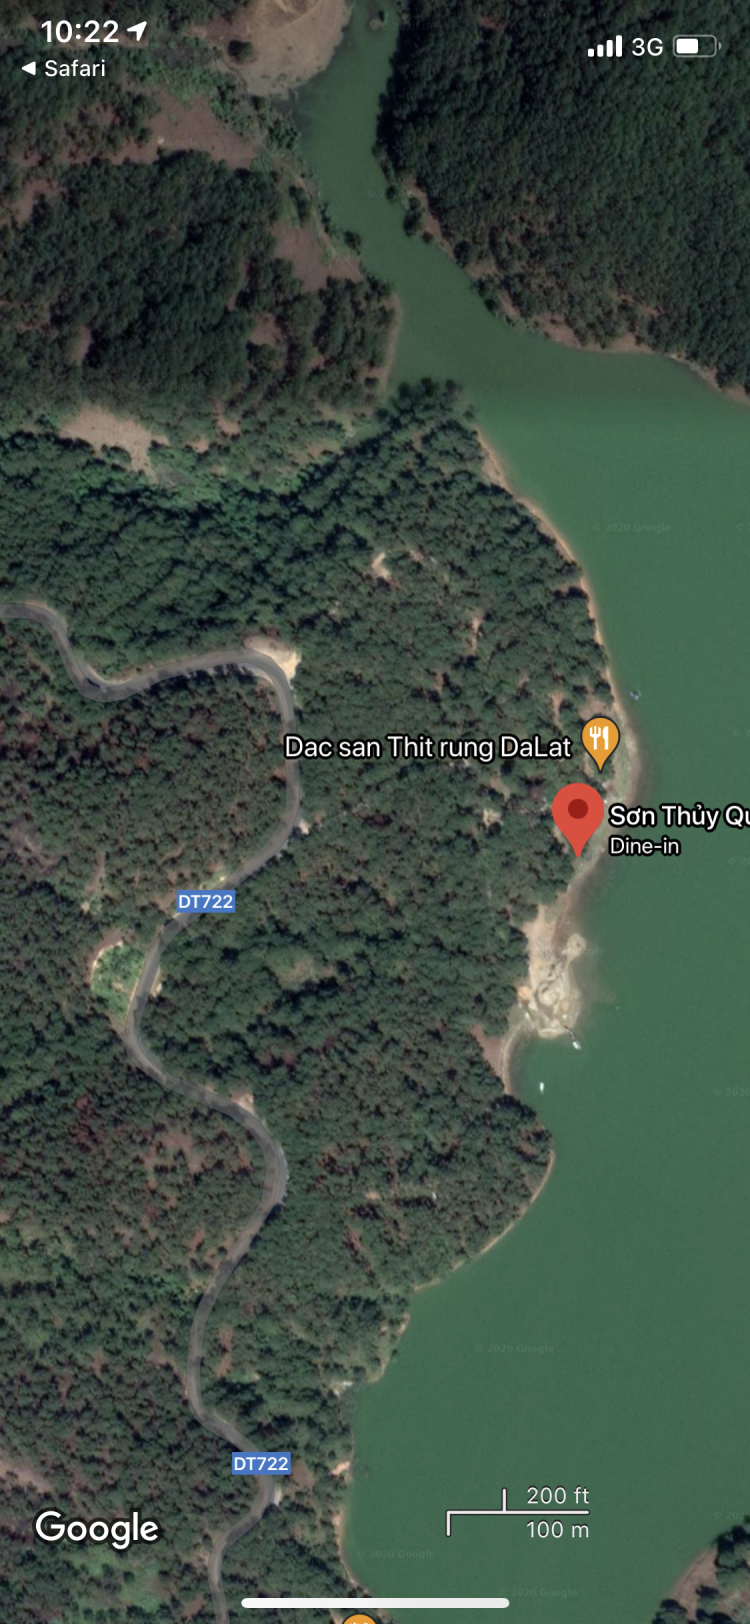 Hồ Suối Vàng, Đà Lạt - Một nơi cắm trại đẹp và dễ đi